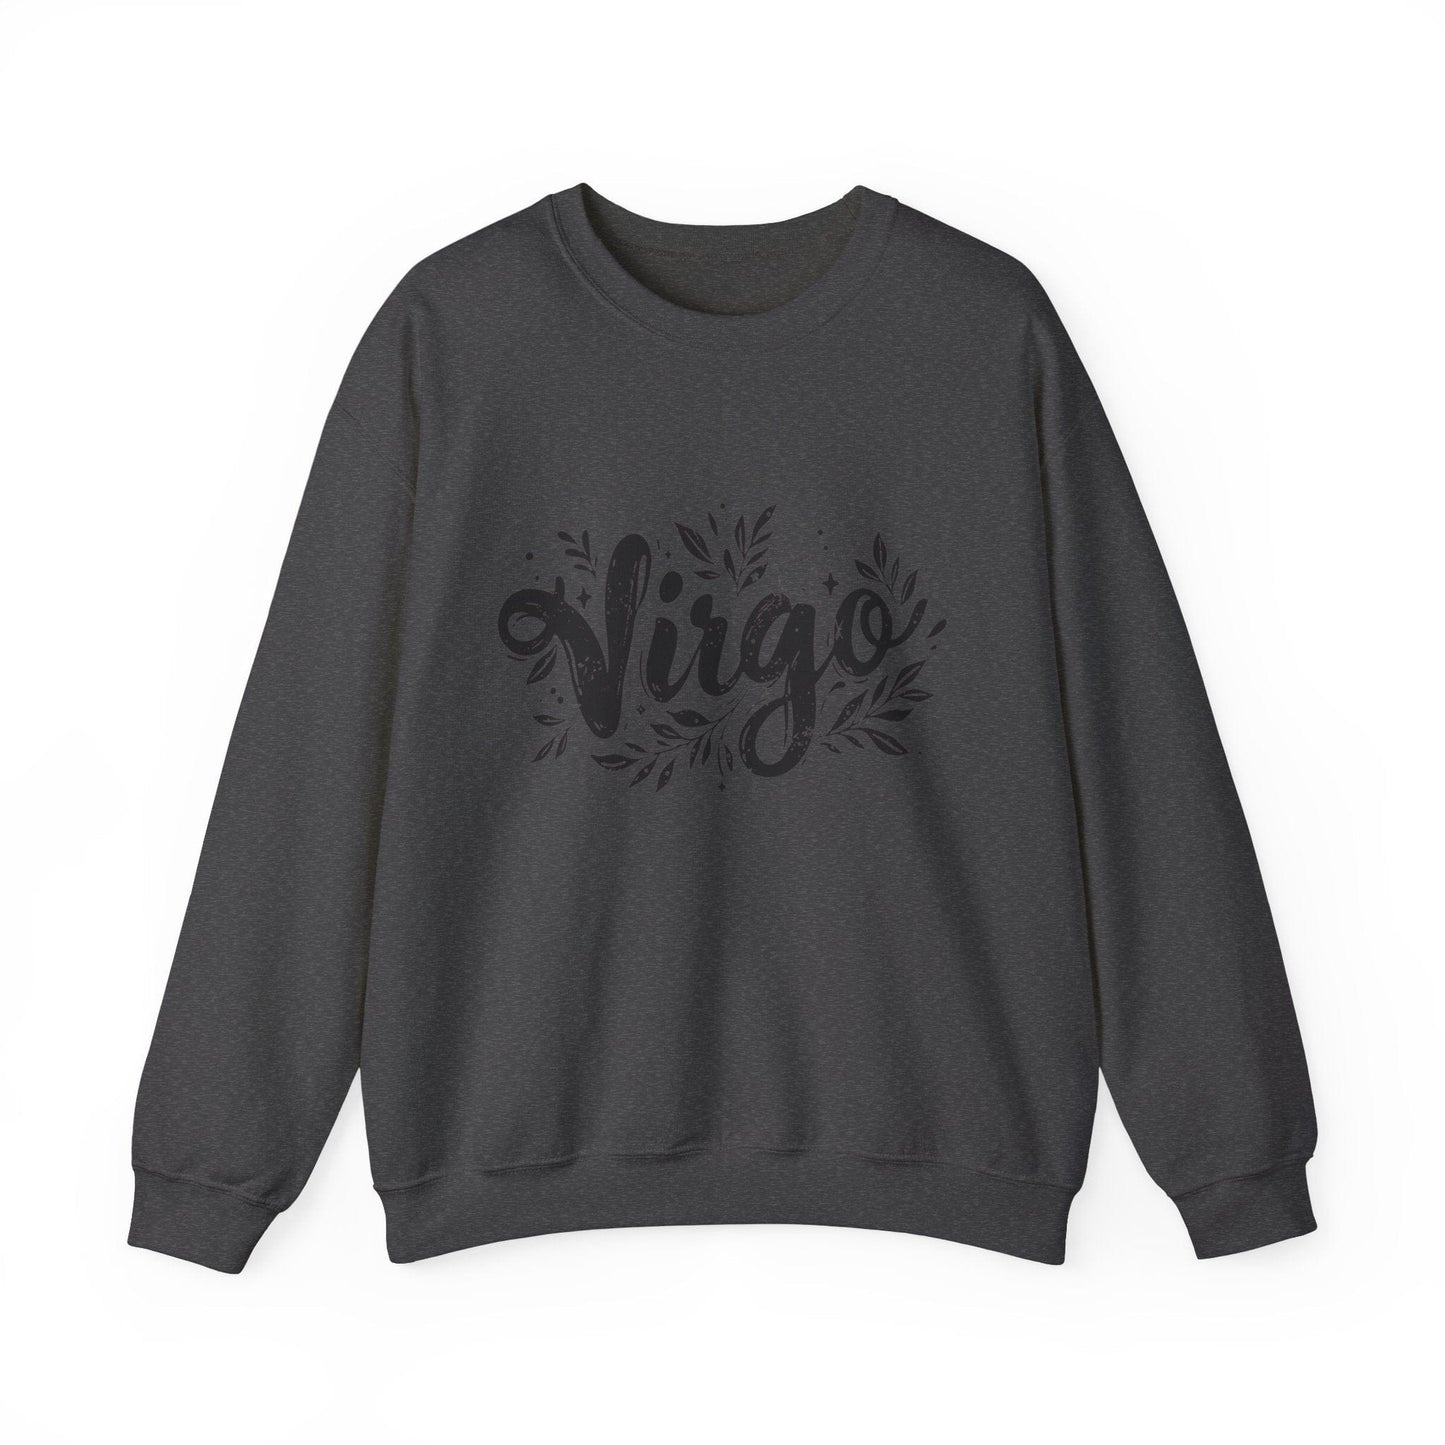 Sweatshirt S / Dark Heather Ink Splattered Virtue Virgo Sweater: Creatively Crafted